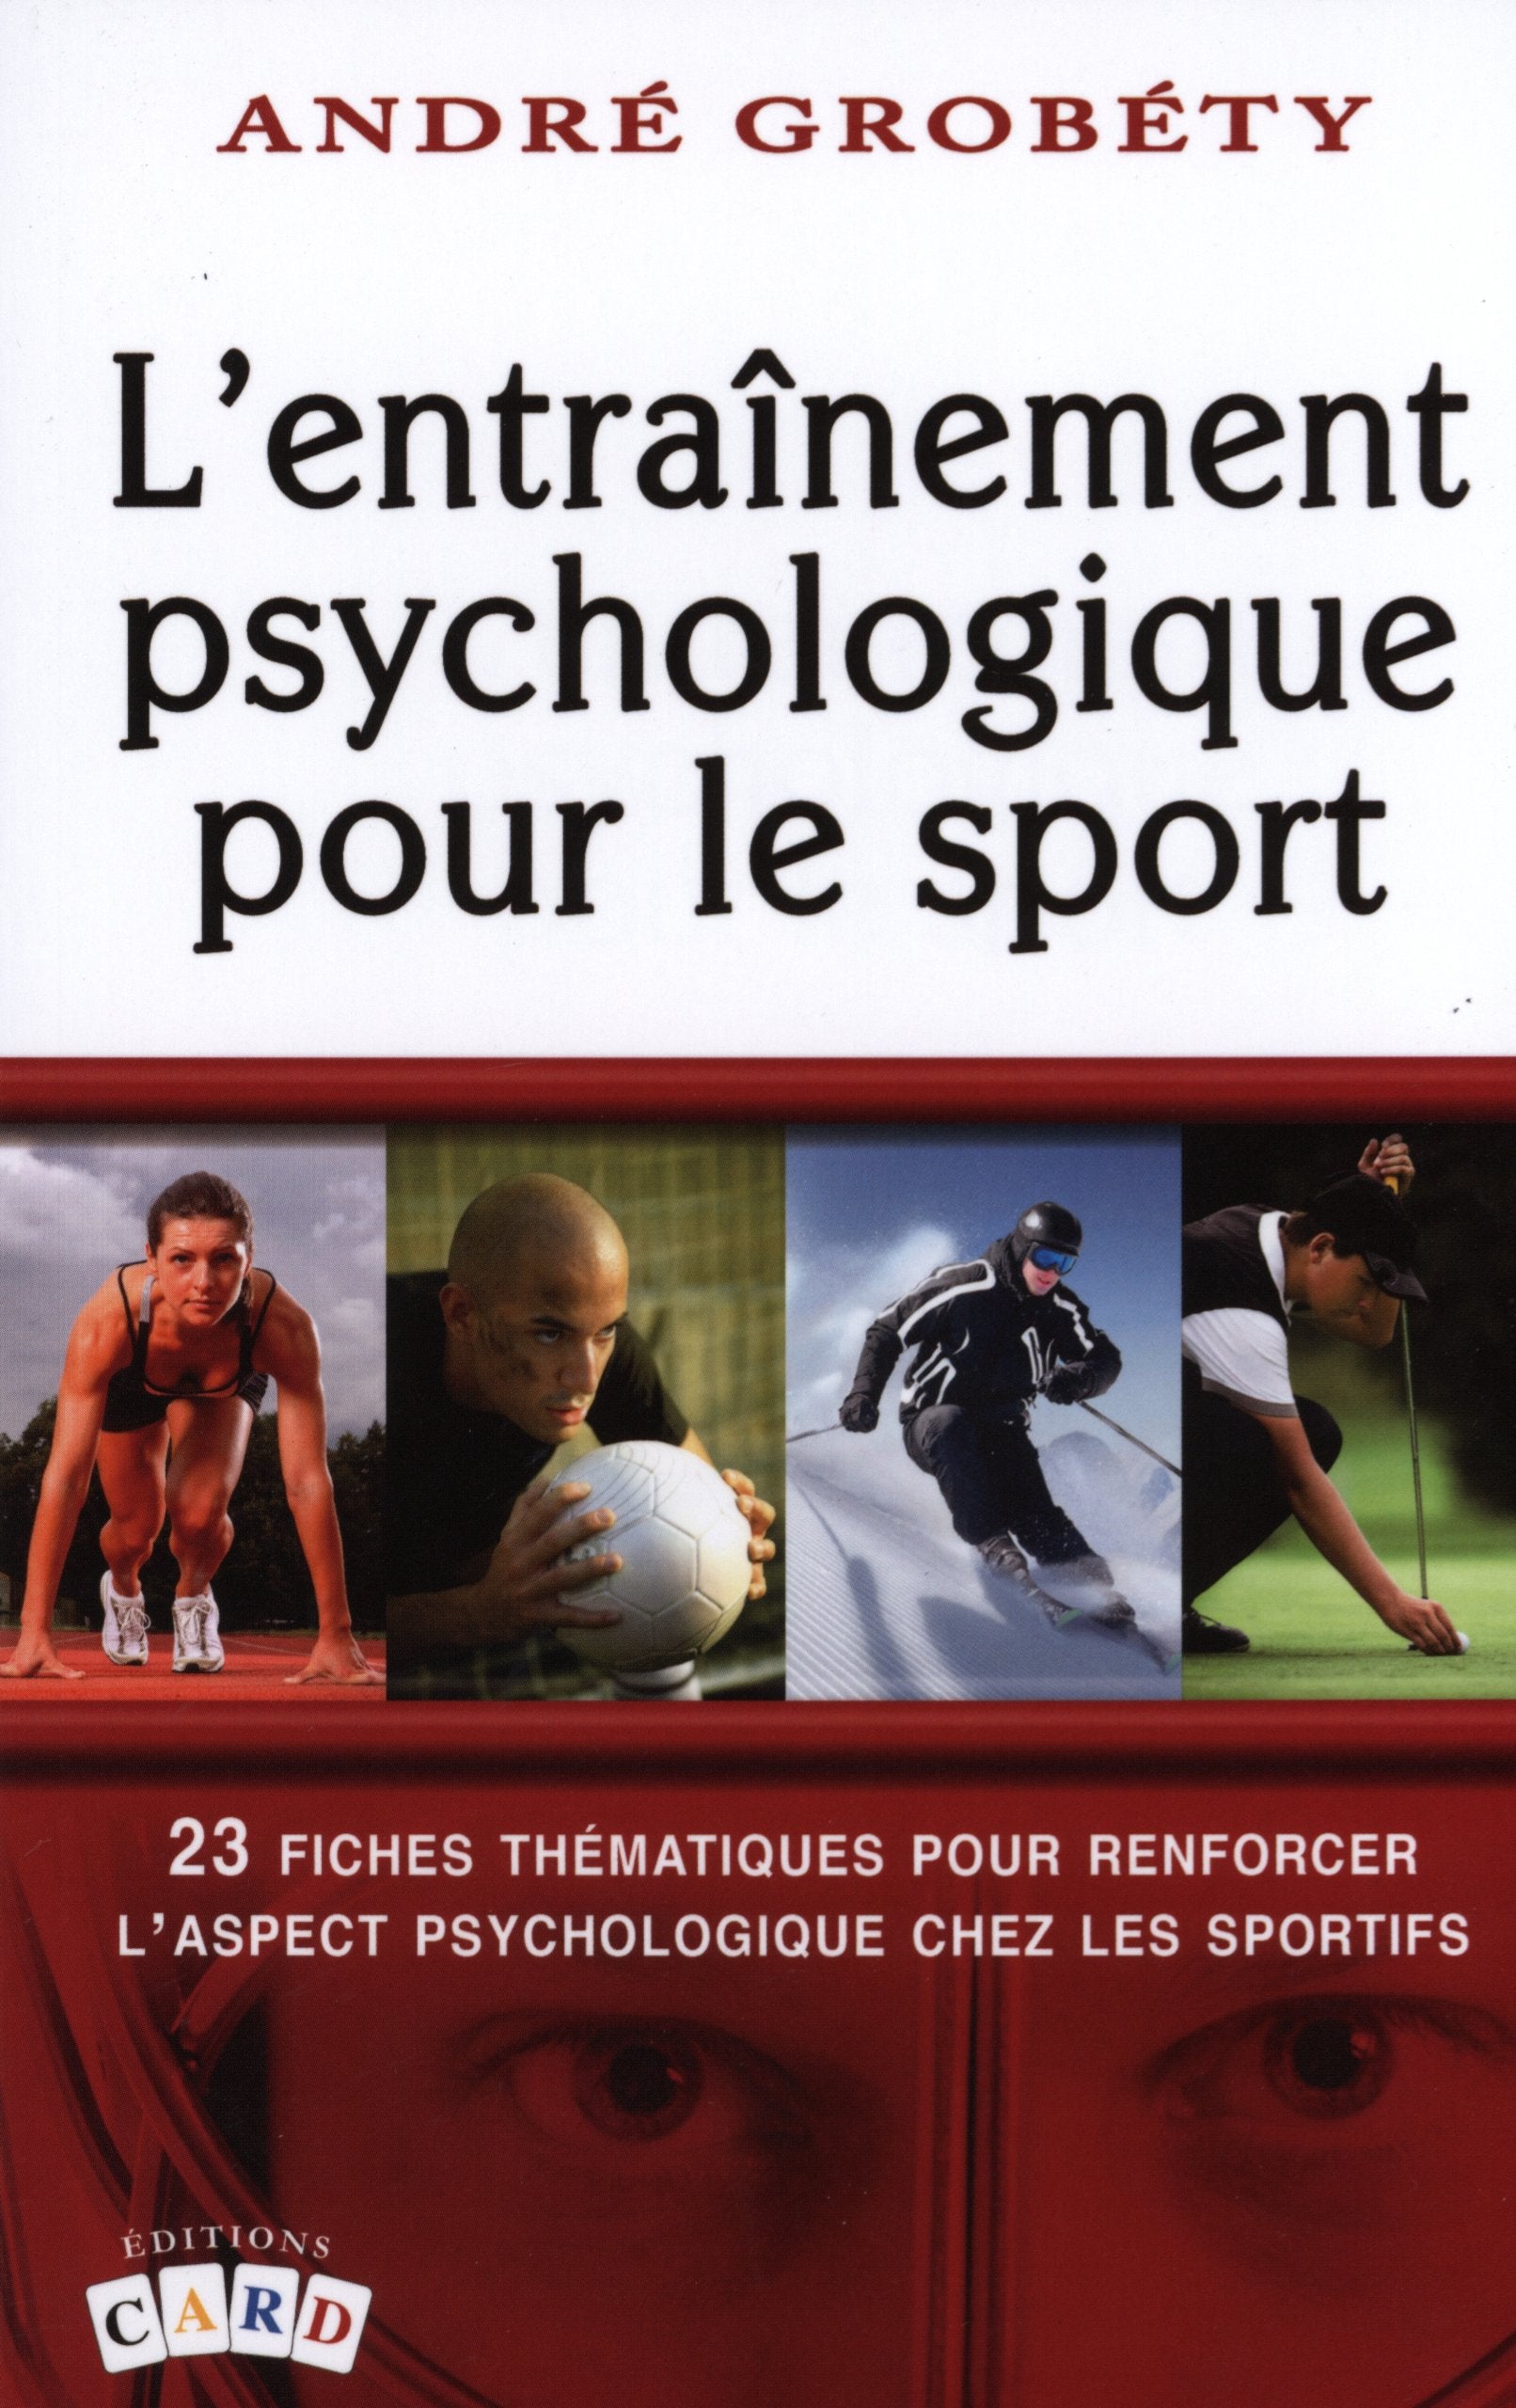 Livre ISBN 2896970029 L'entraînement psychologique pour le sport : 23 fiches thématiques pour renforcer l'aspect psychologique chez les sportifs (André Grobéty)